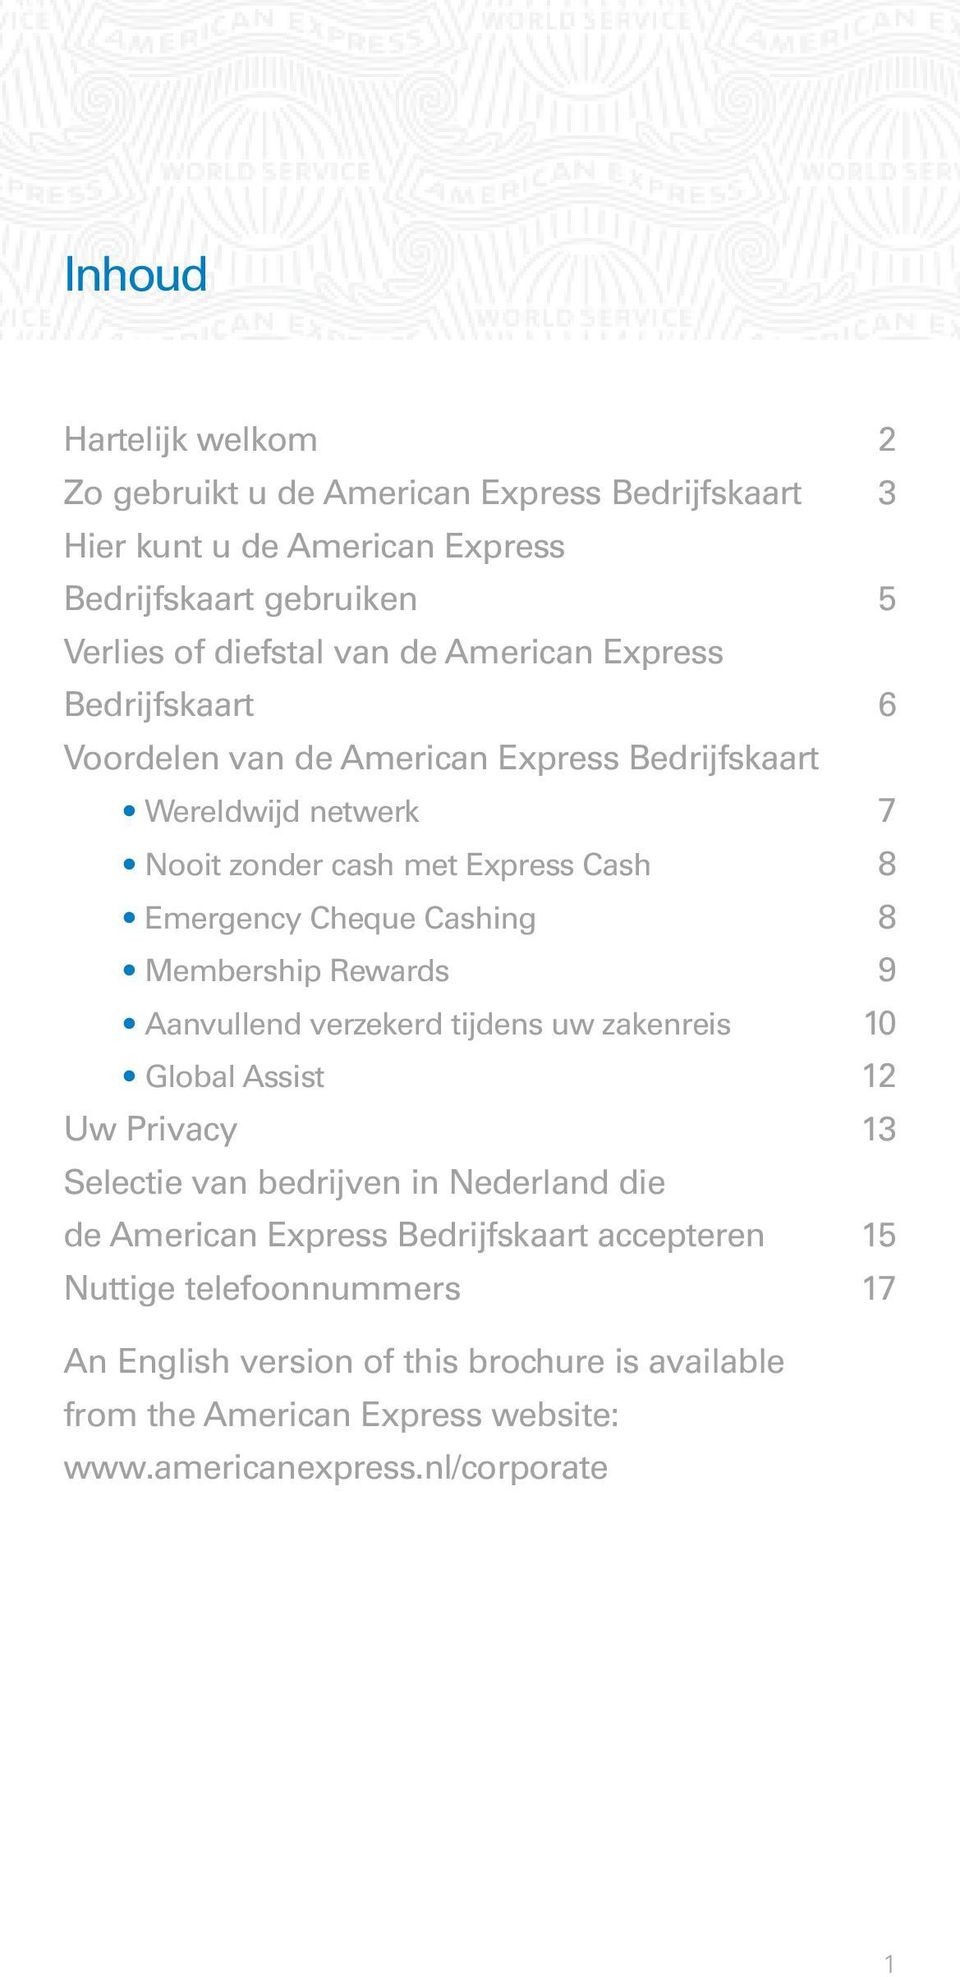 8 Membership Rewards 9 Aanvullend verzekerd tijdens uw zakenreis 10 Global Assist 12 Uw Privacy 13 Selectie van bedrijven in Nederland die de American Express